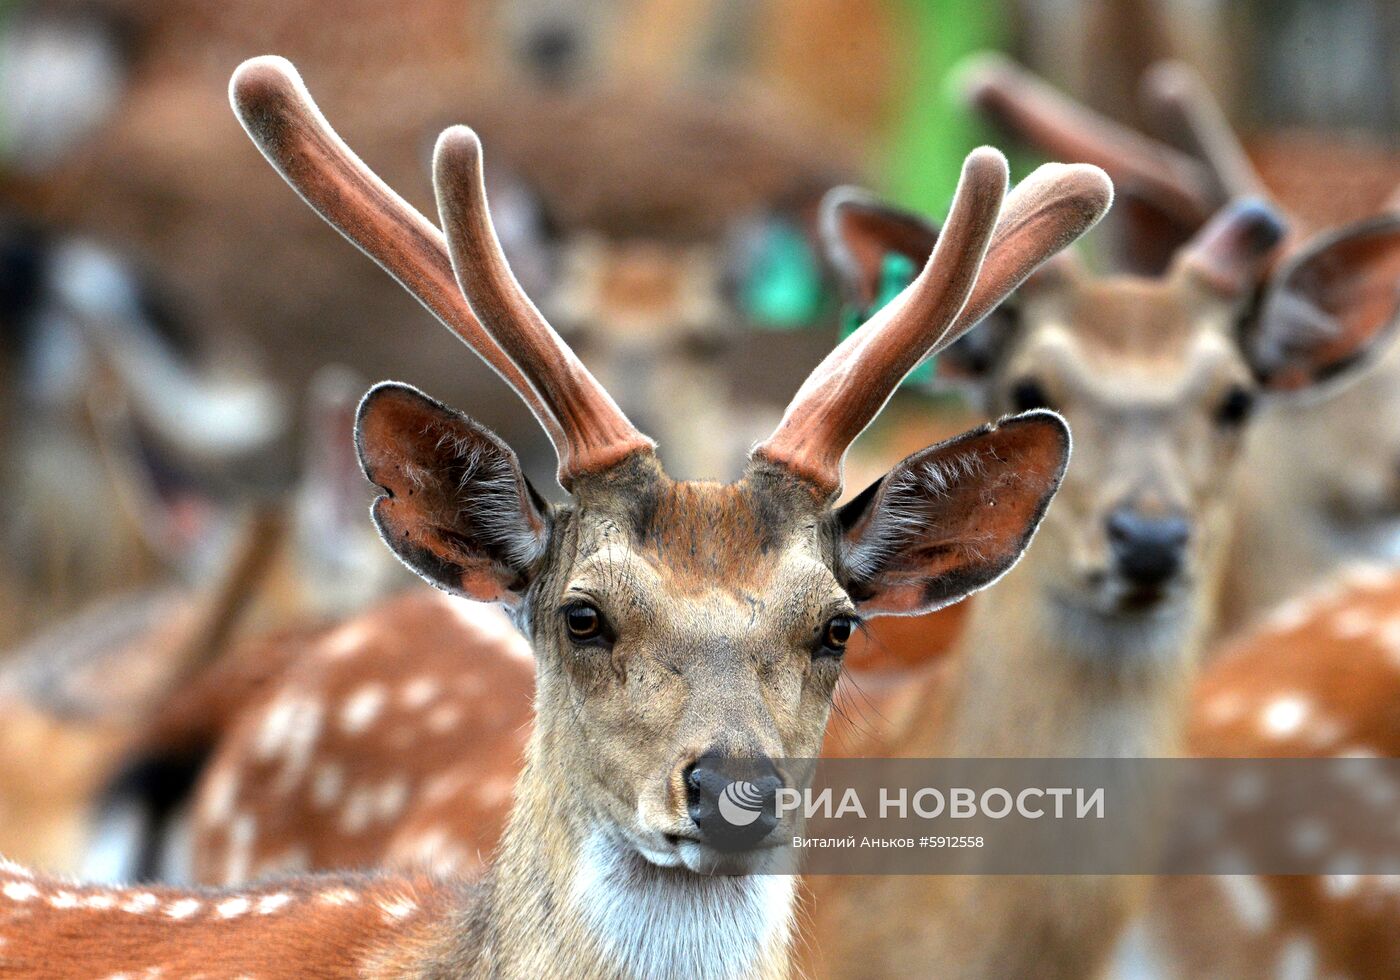 Пятнистые олени в парке дикой природы "Леопарды на Гамова" в Приморском крае